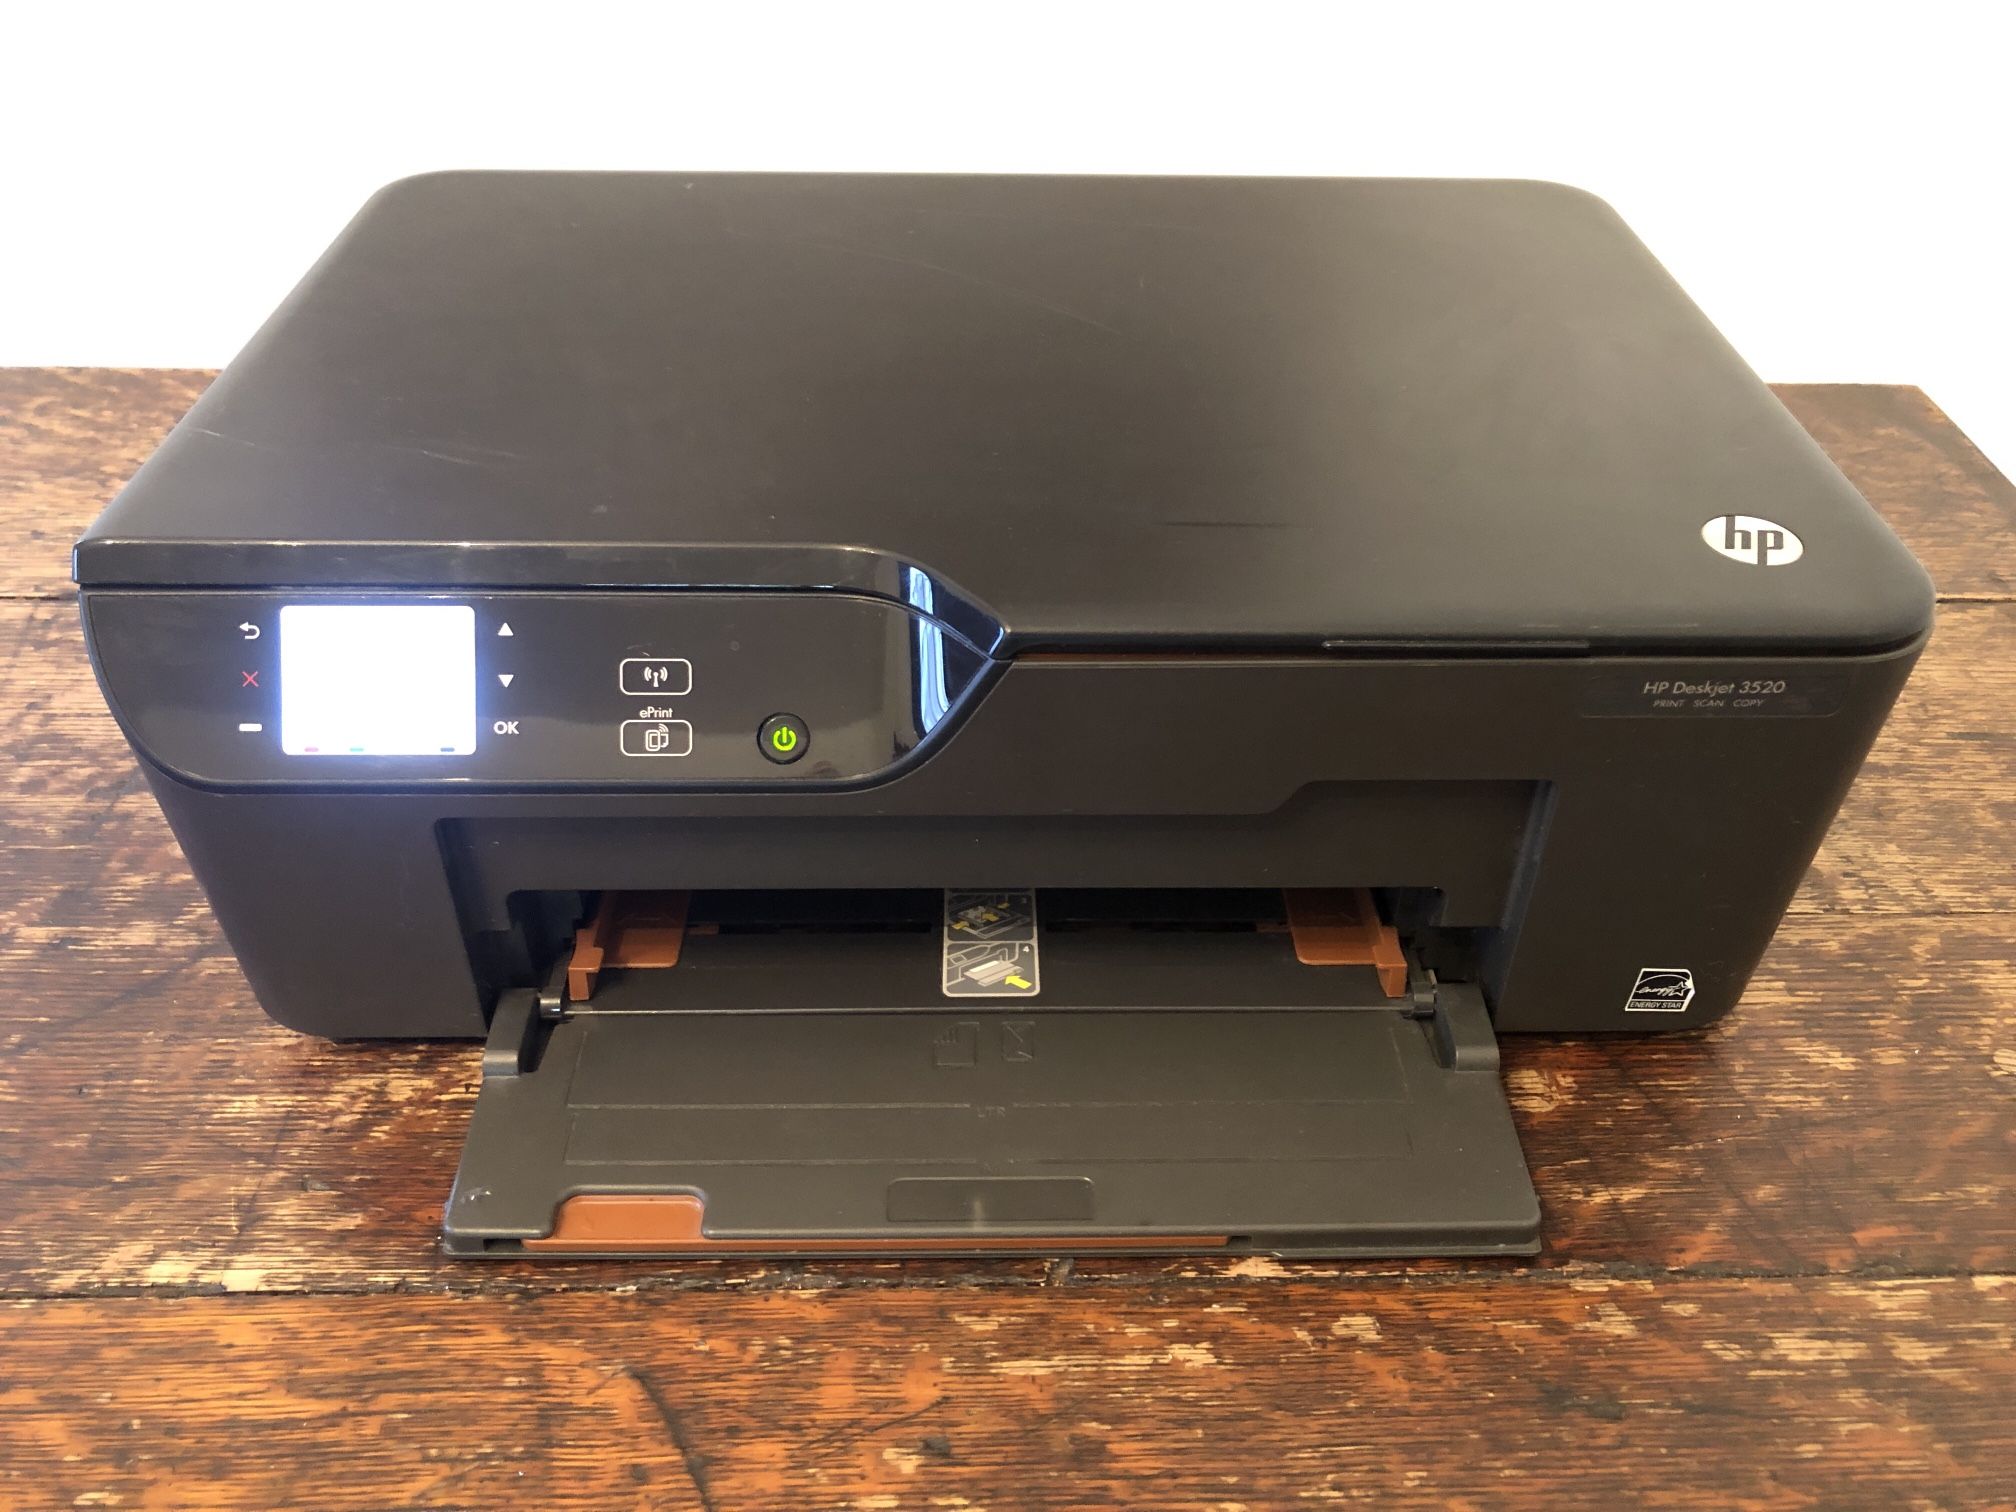 HP Deskjet 3520 e-All-in-One Wireless Printer Scanner